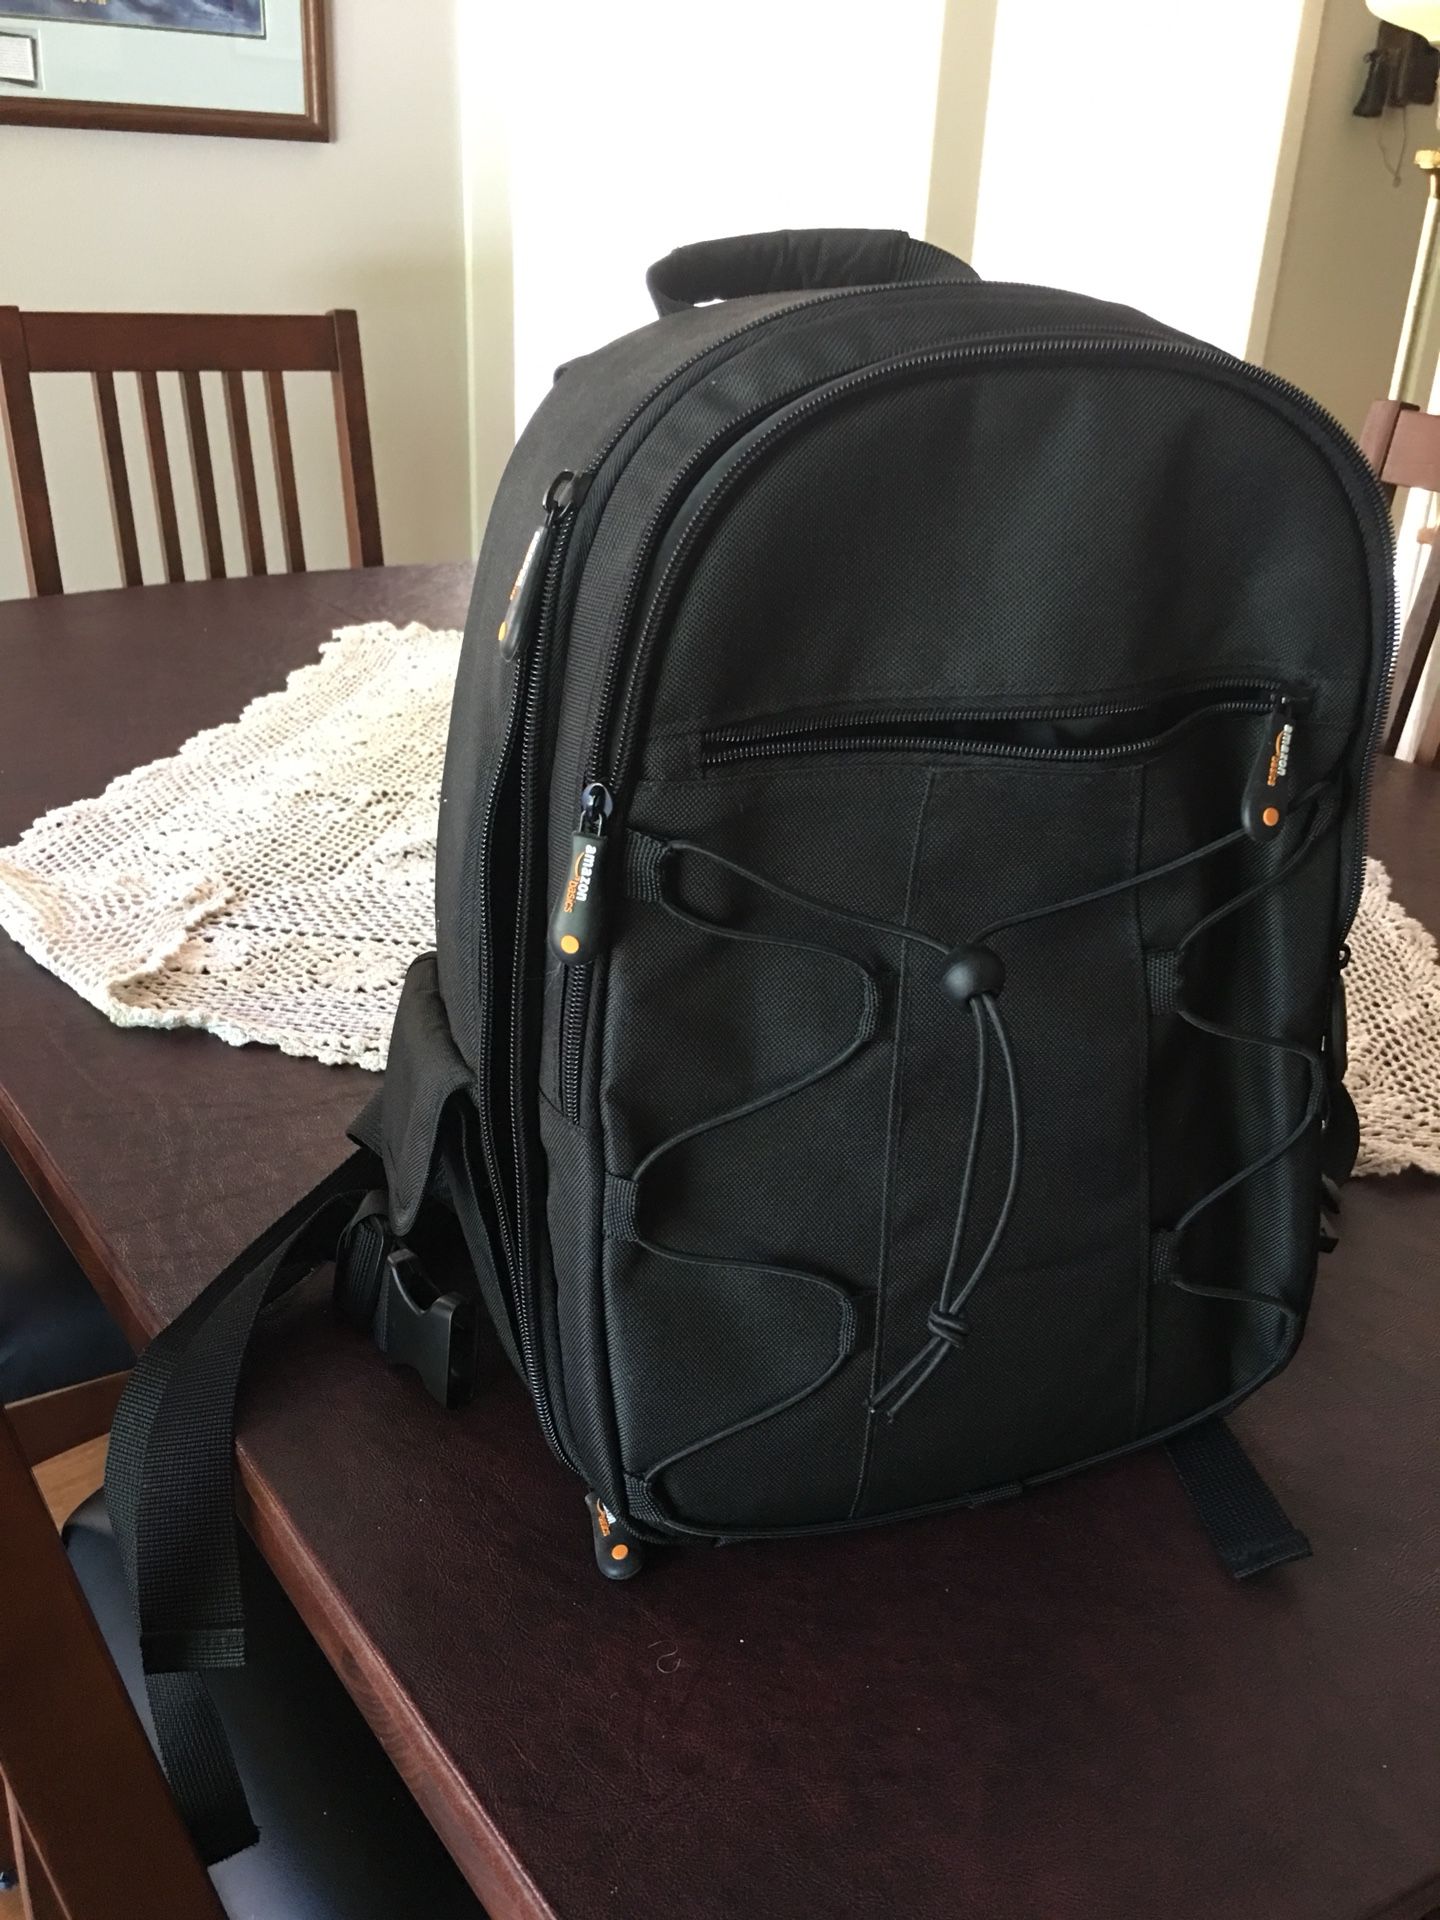 Amazon basic camera case/backpack